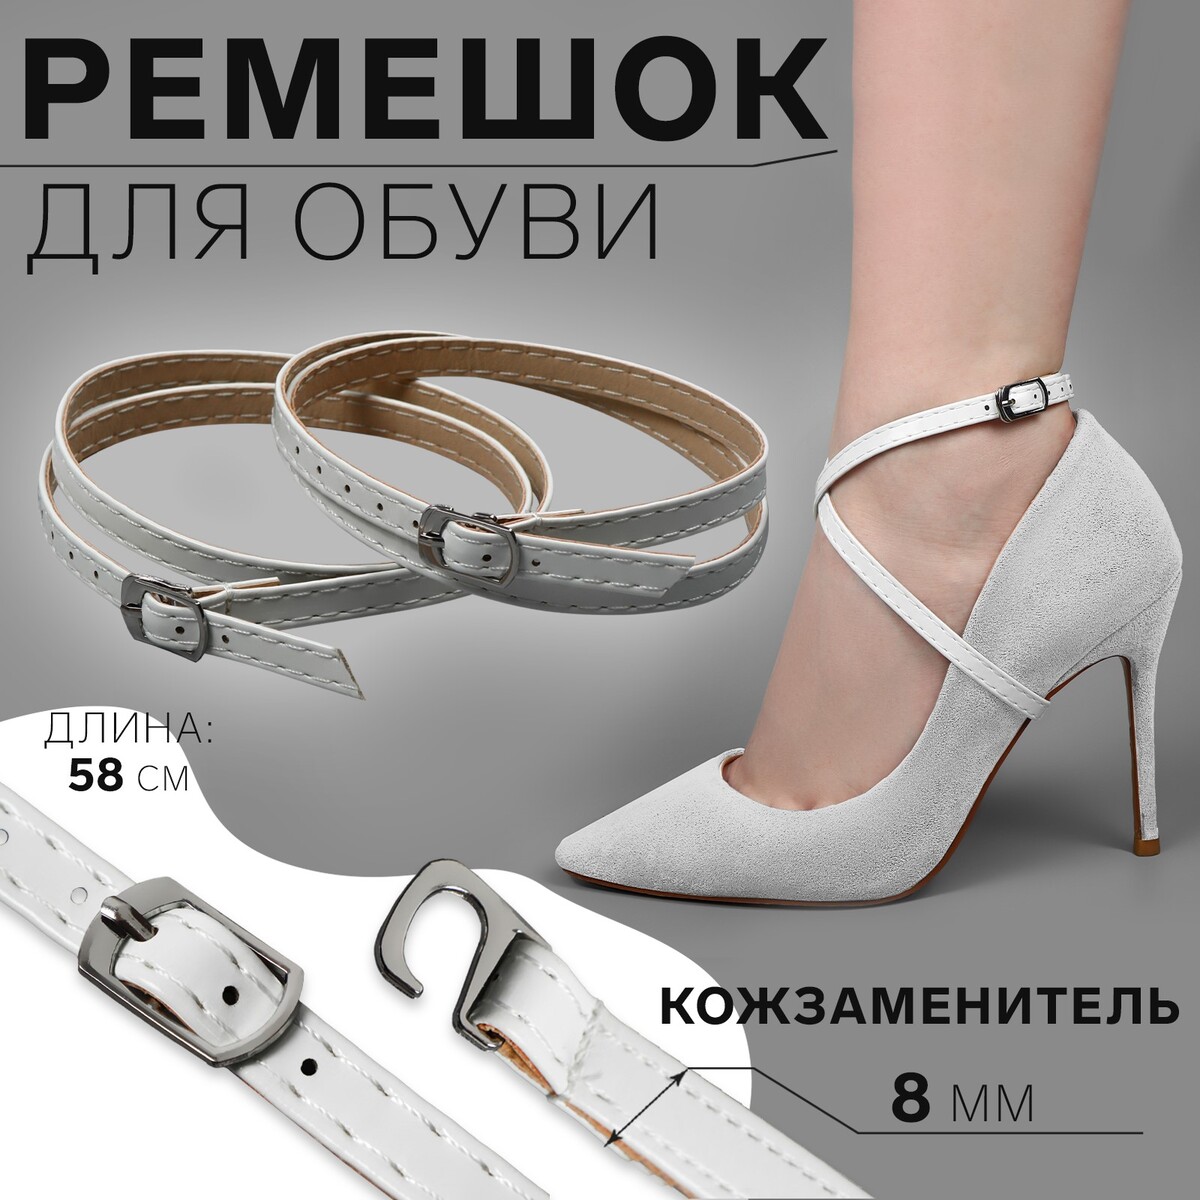 Ремешок для обуви, искусственная кожа, 58 см, 8 мм, 2 шт, цвет белый ремешок для обуви искусственная кожа 58 см 8 мм 2 шт белый